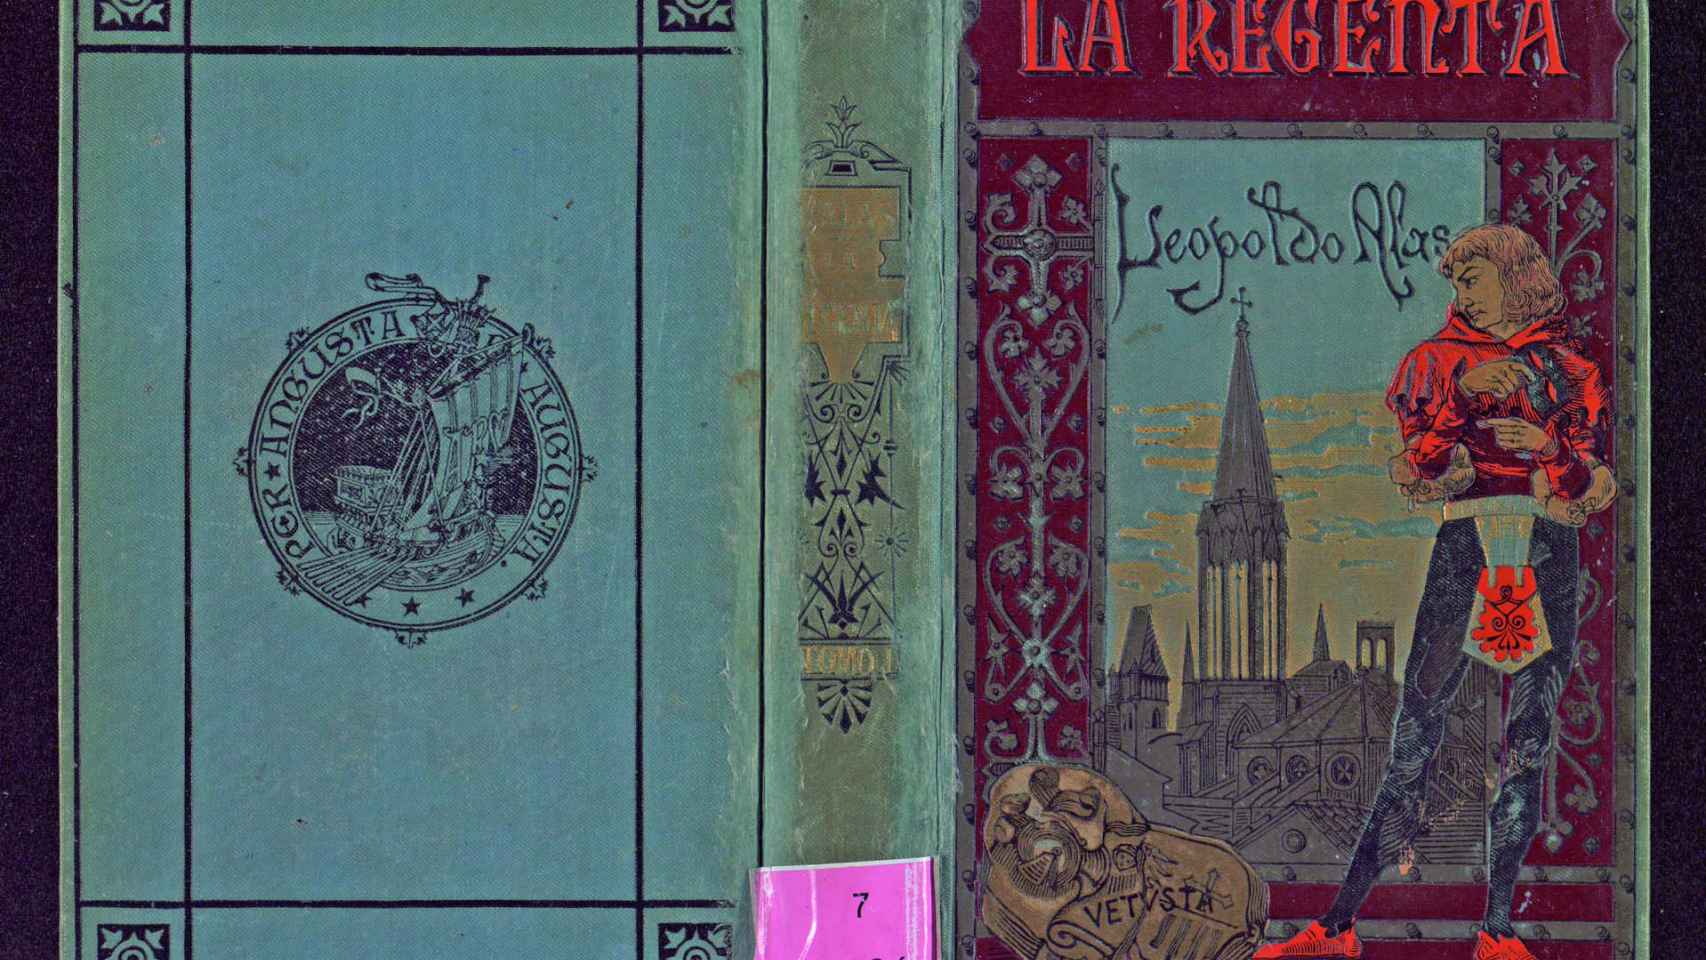 Portada de la primera edición de 'La Regenta' (1884)